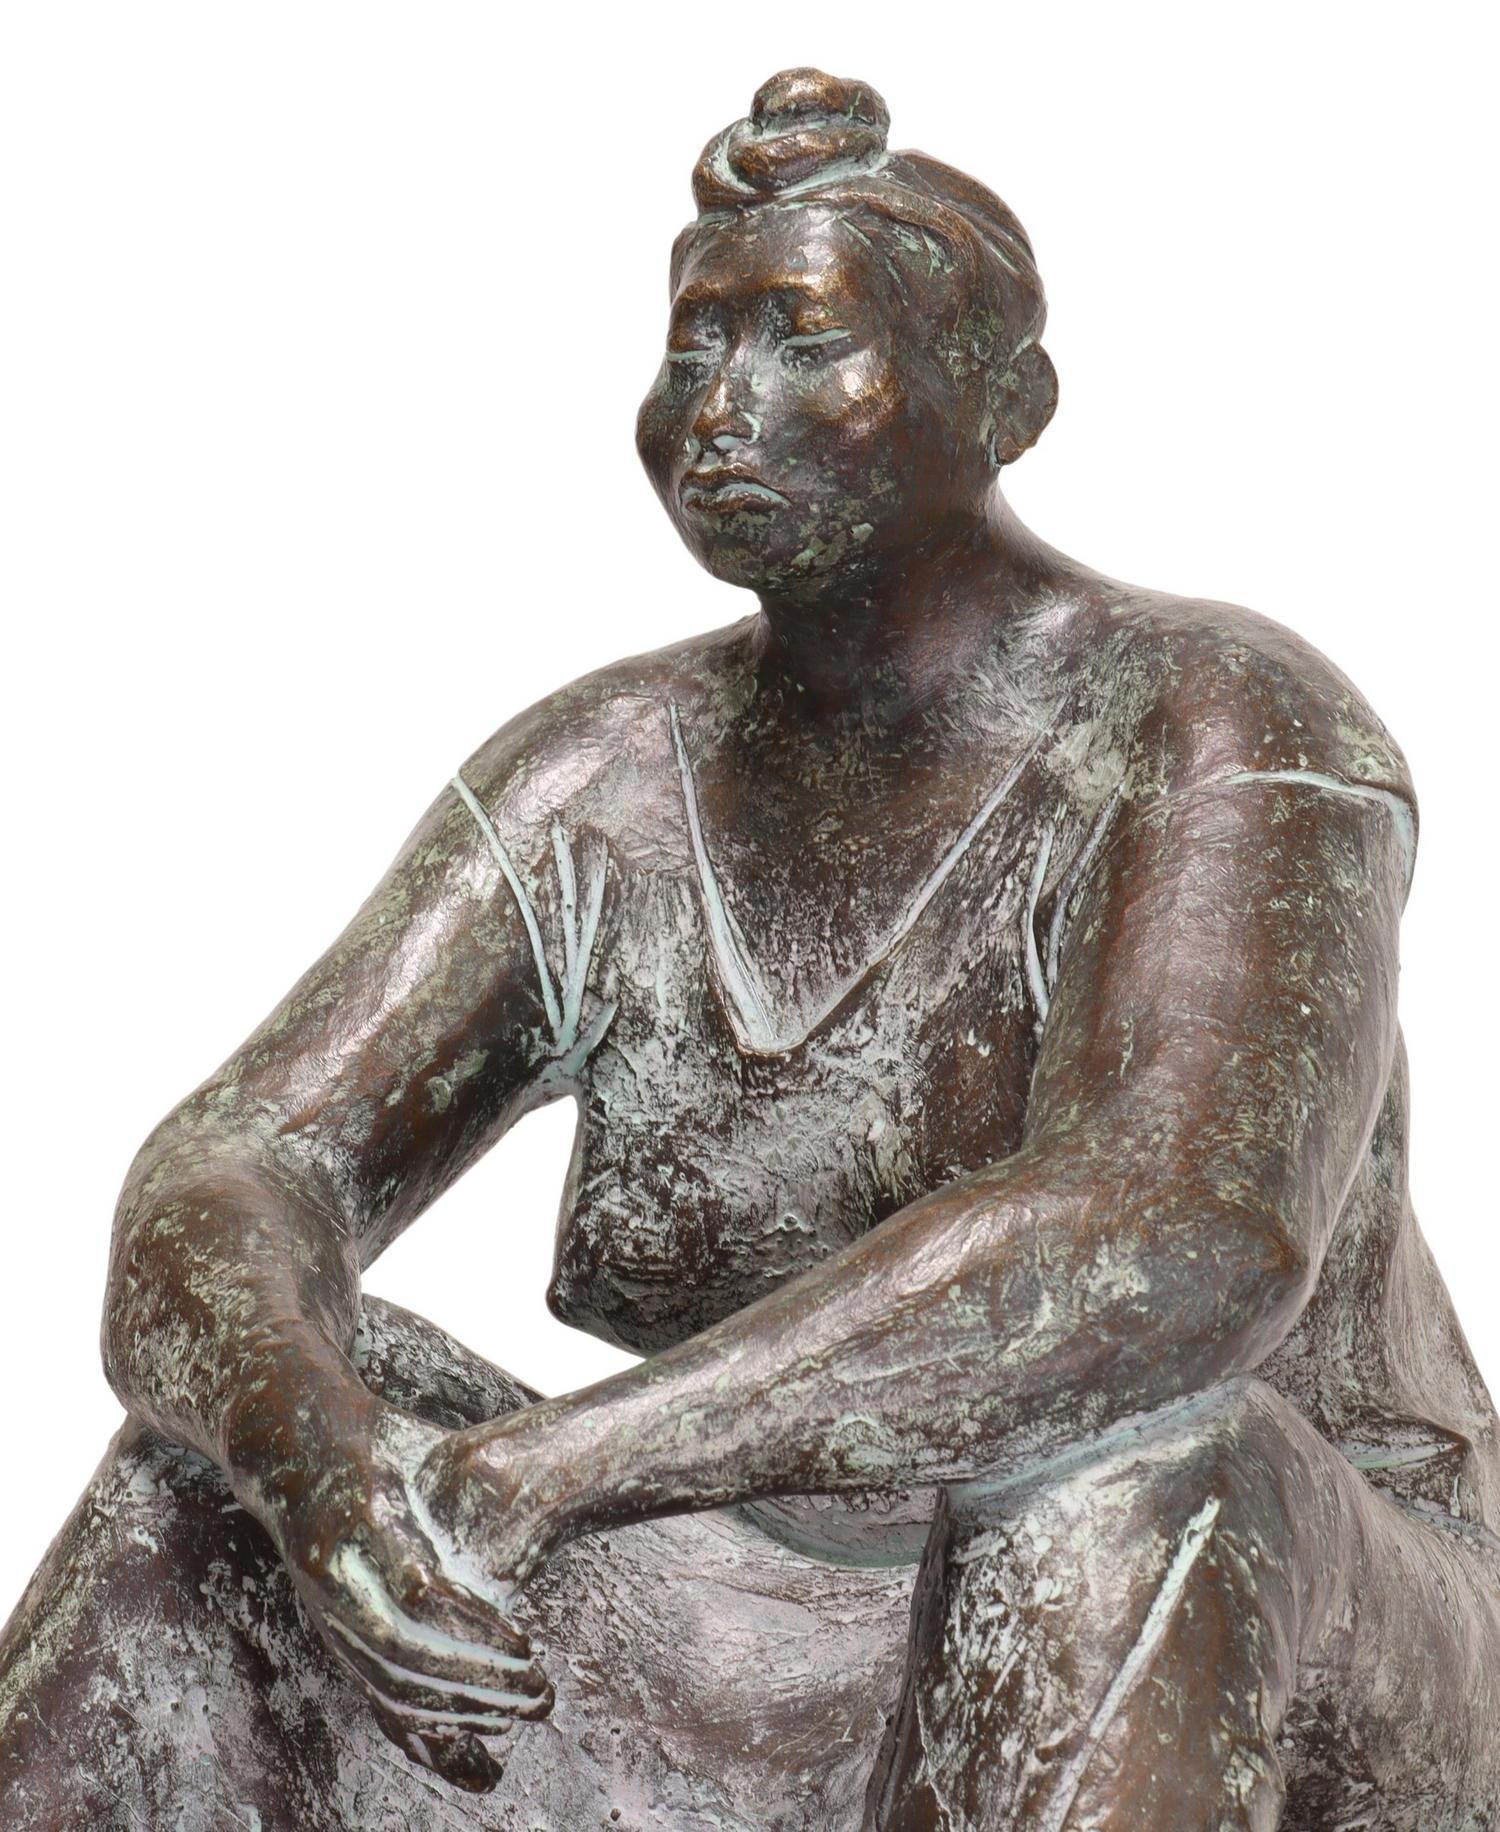 Martha On The Bench, Bronzeskulptur – Sculpture von Armando Amaya